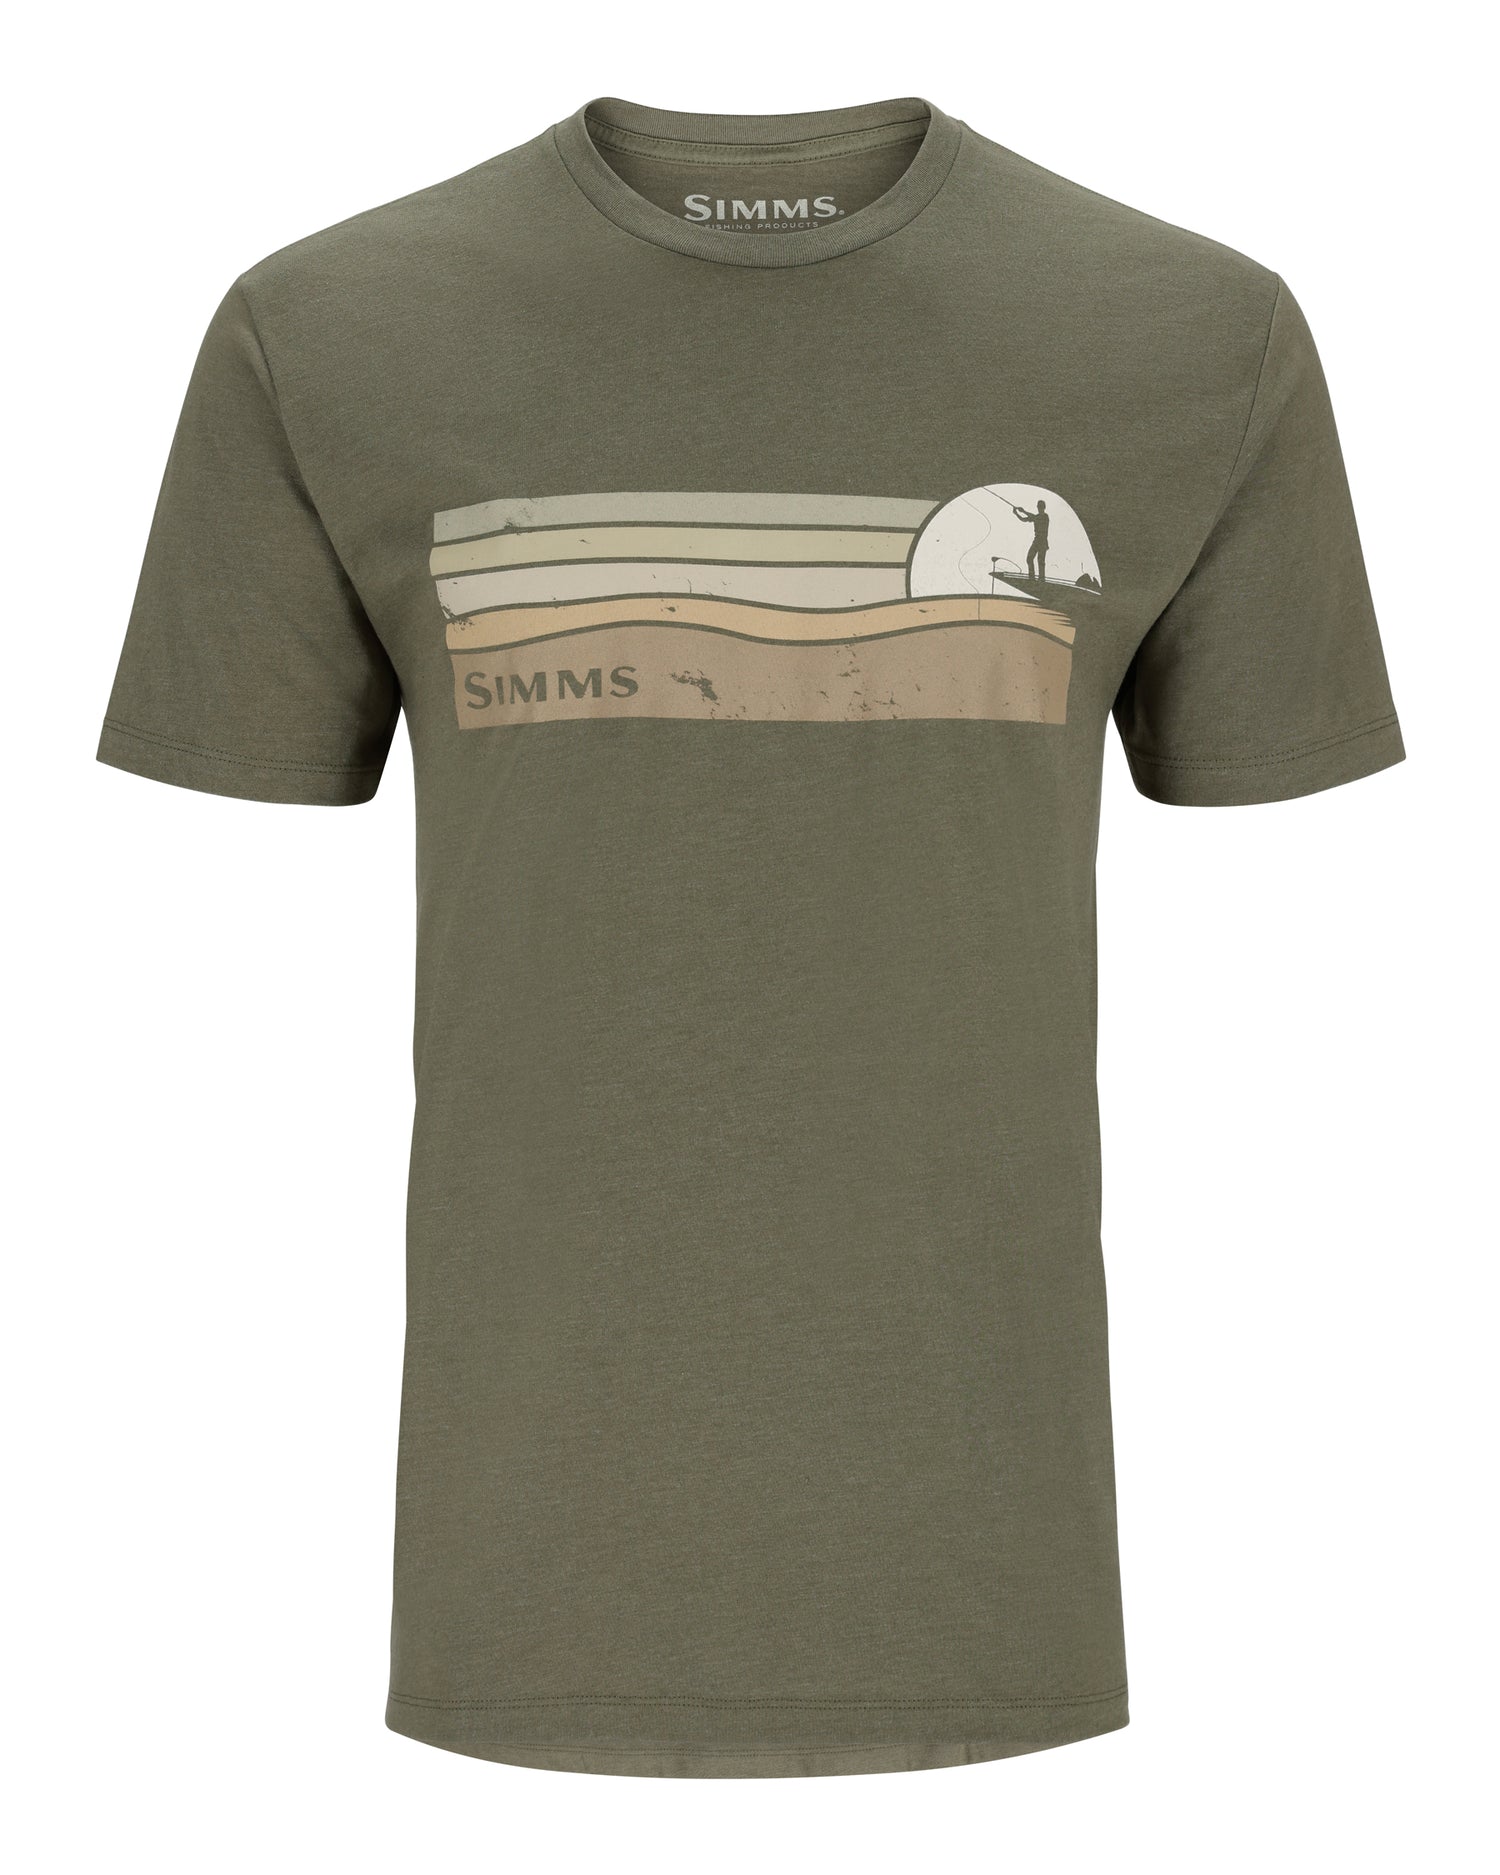 M's Simms Sunset T-Shirt